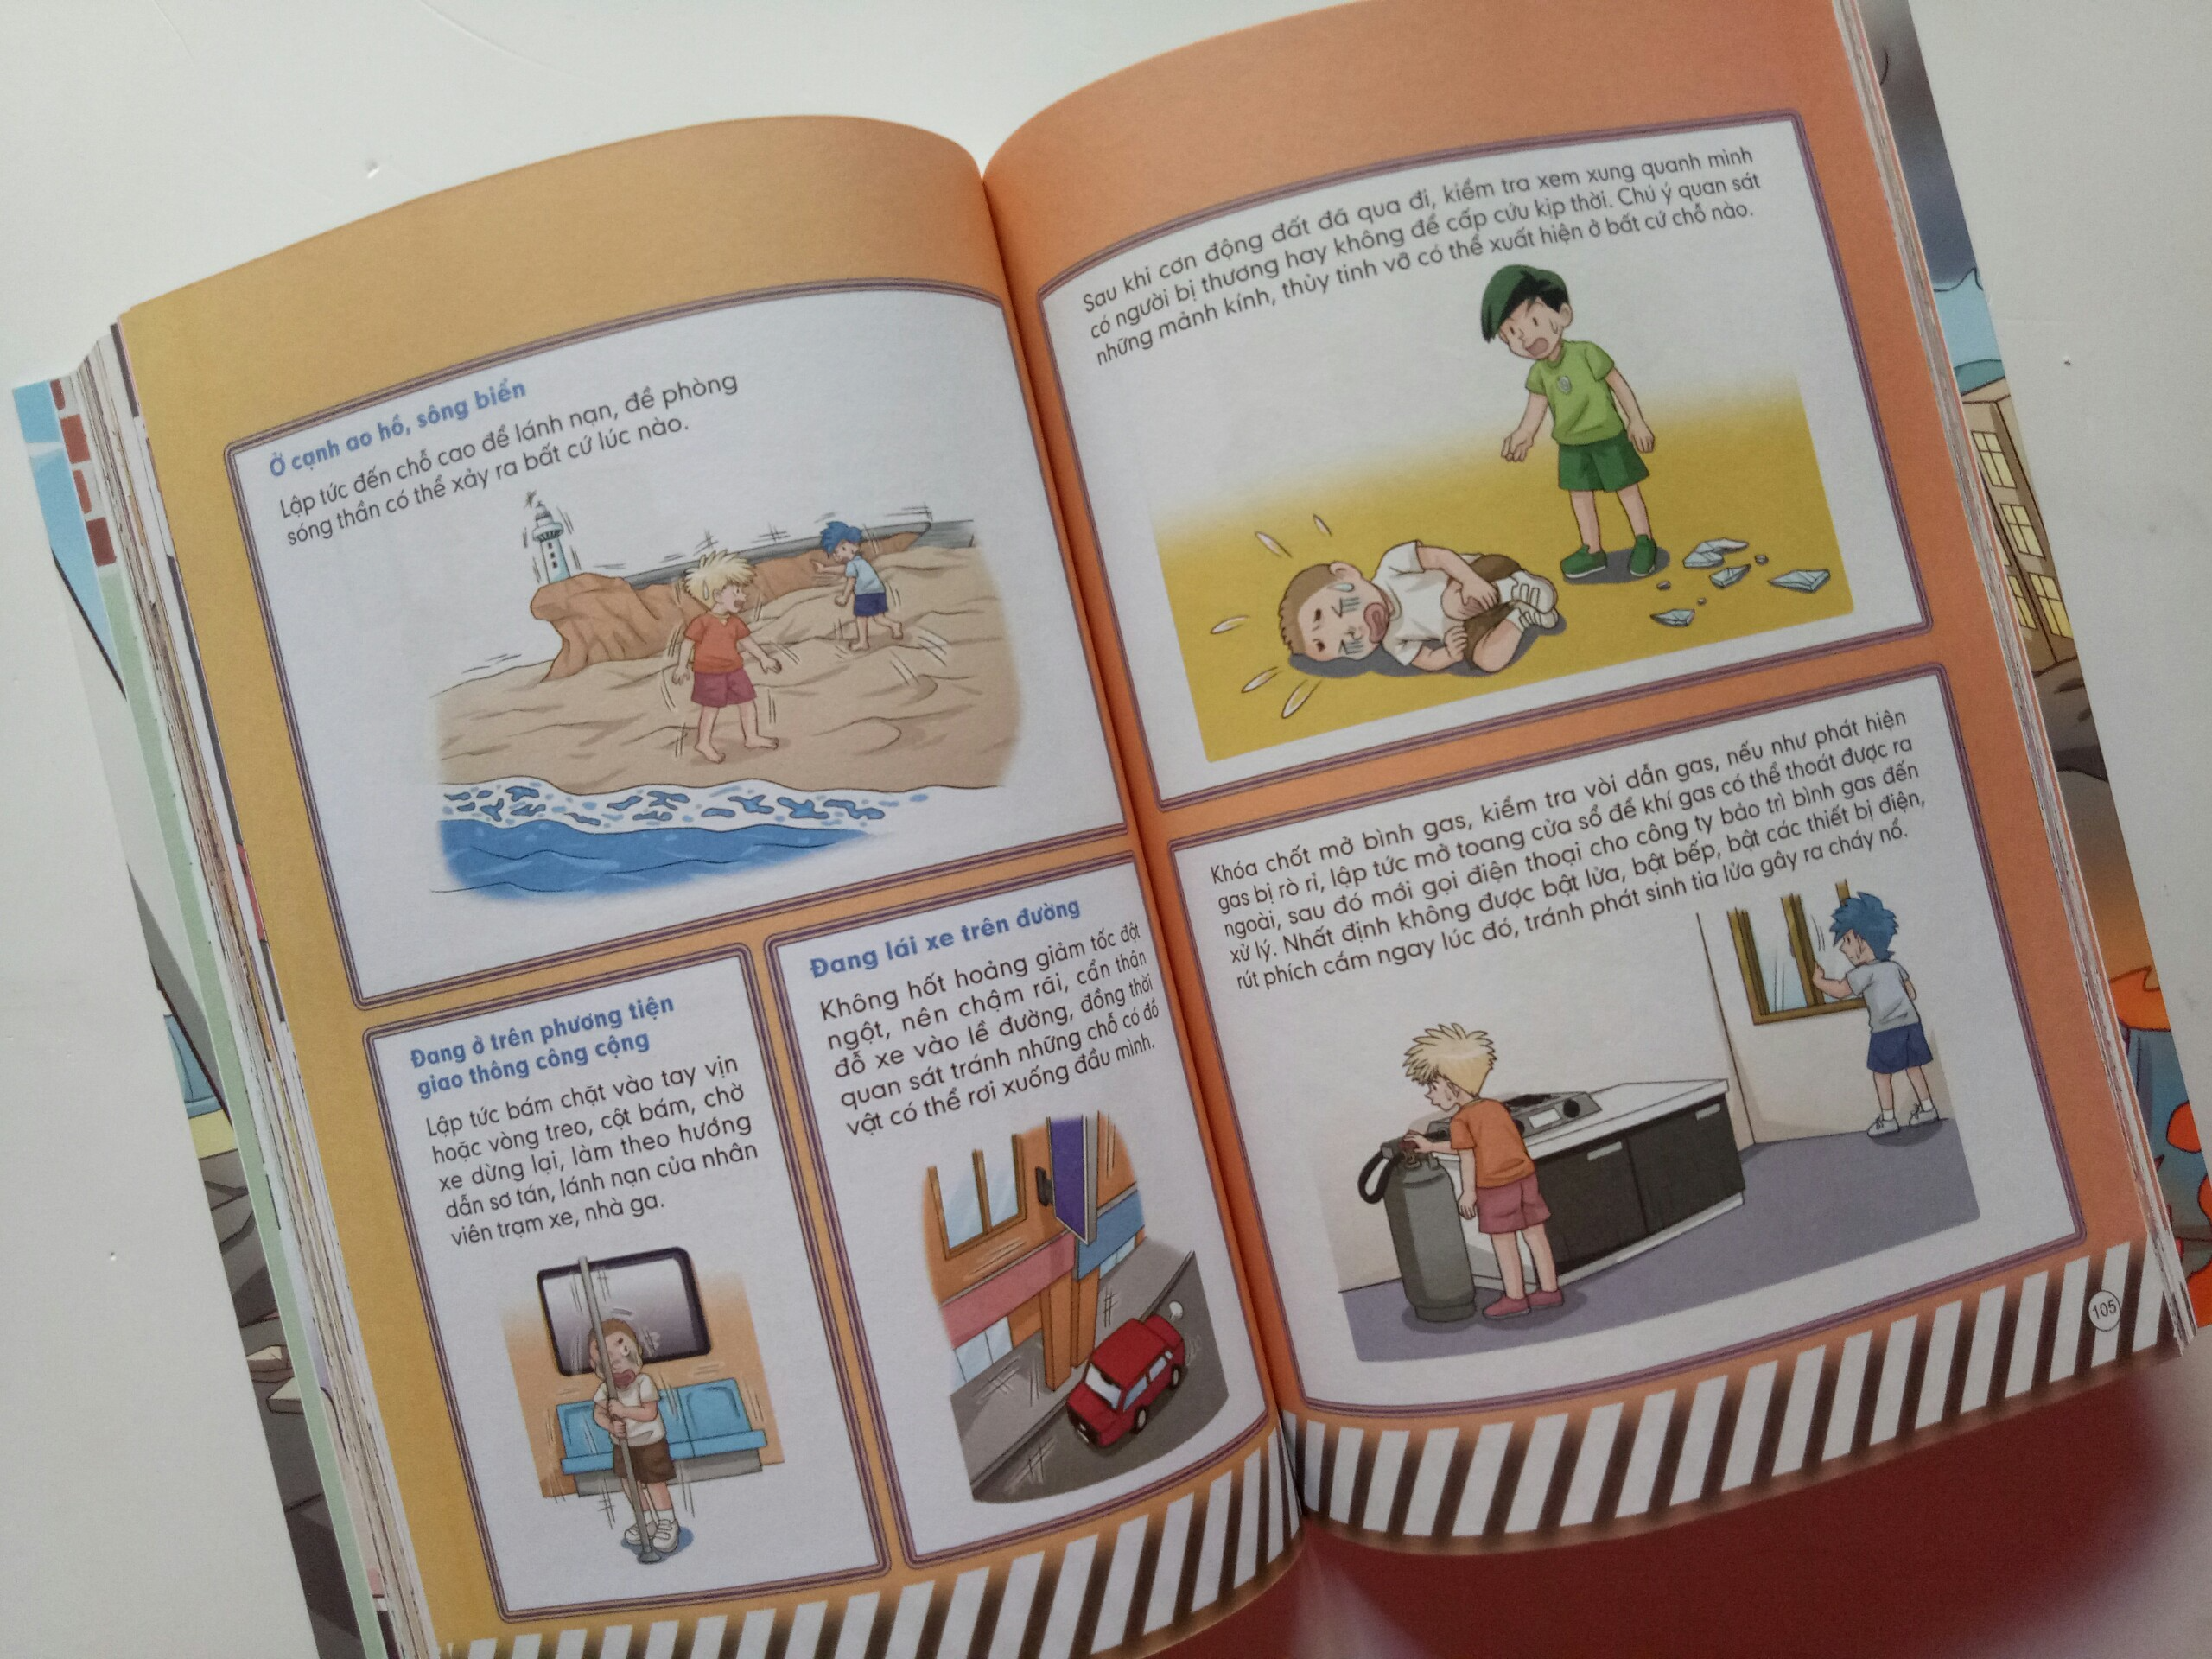 Sách - Thoát nạn trong tích tắc - Đối mặt với hỏa hoạn, lũ lụt, động đất - Dành cho bé từ 5-15 tuổi - Đinh Tị Books